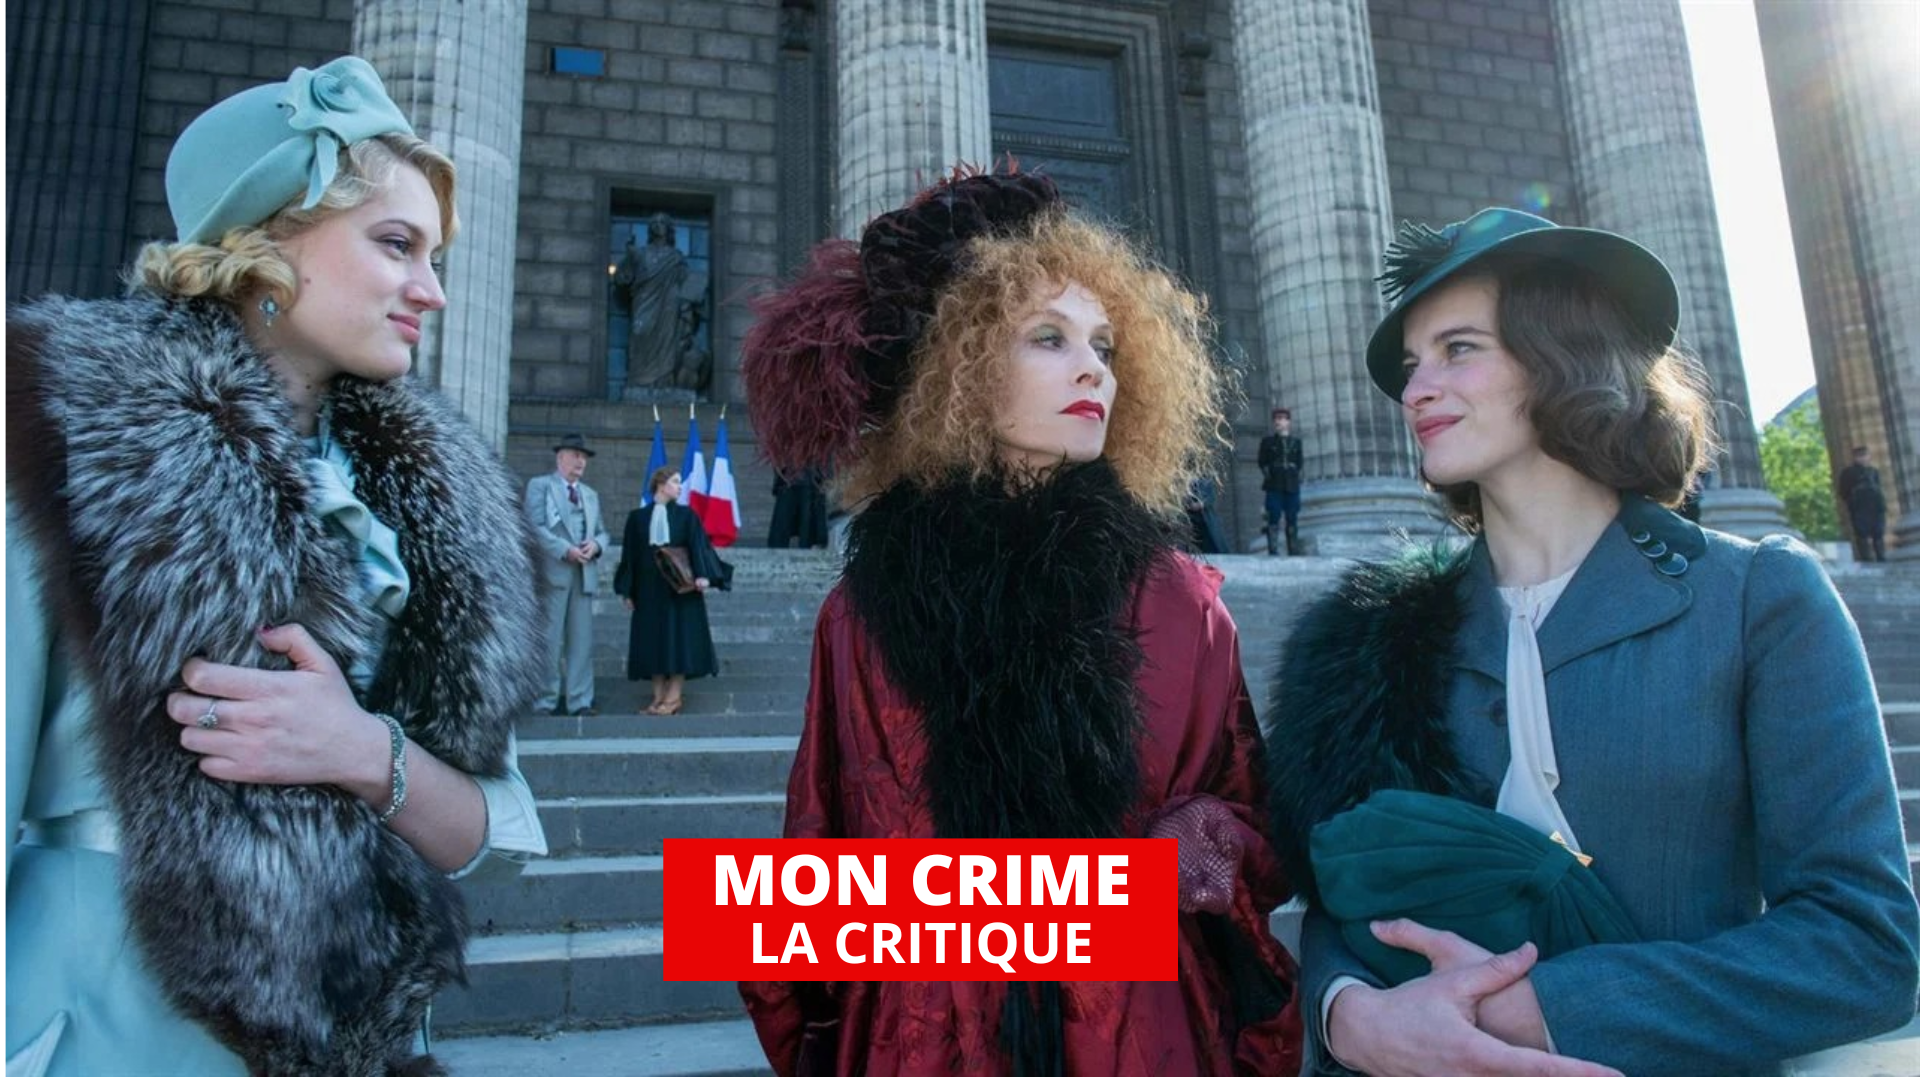 Mon crime : une fantaisie ravissante et ironique de François Ozon